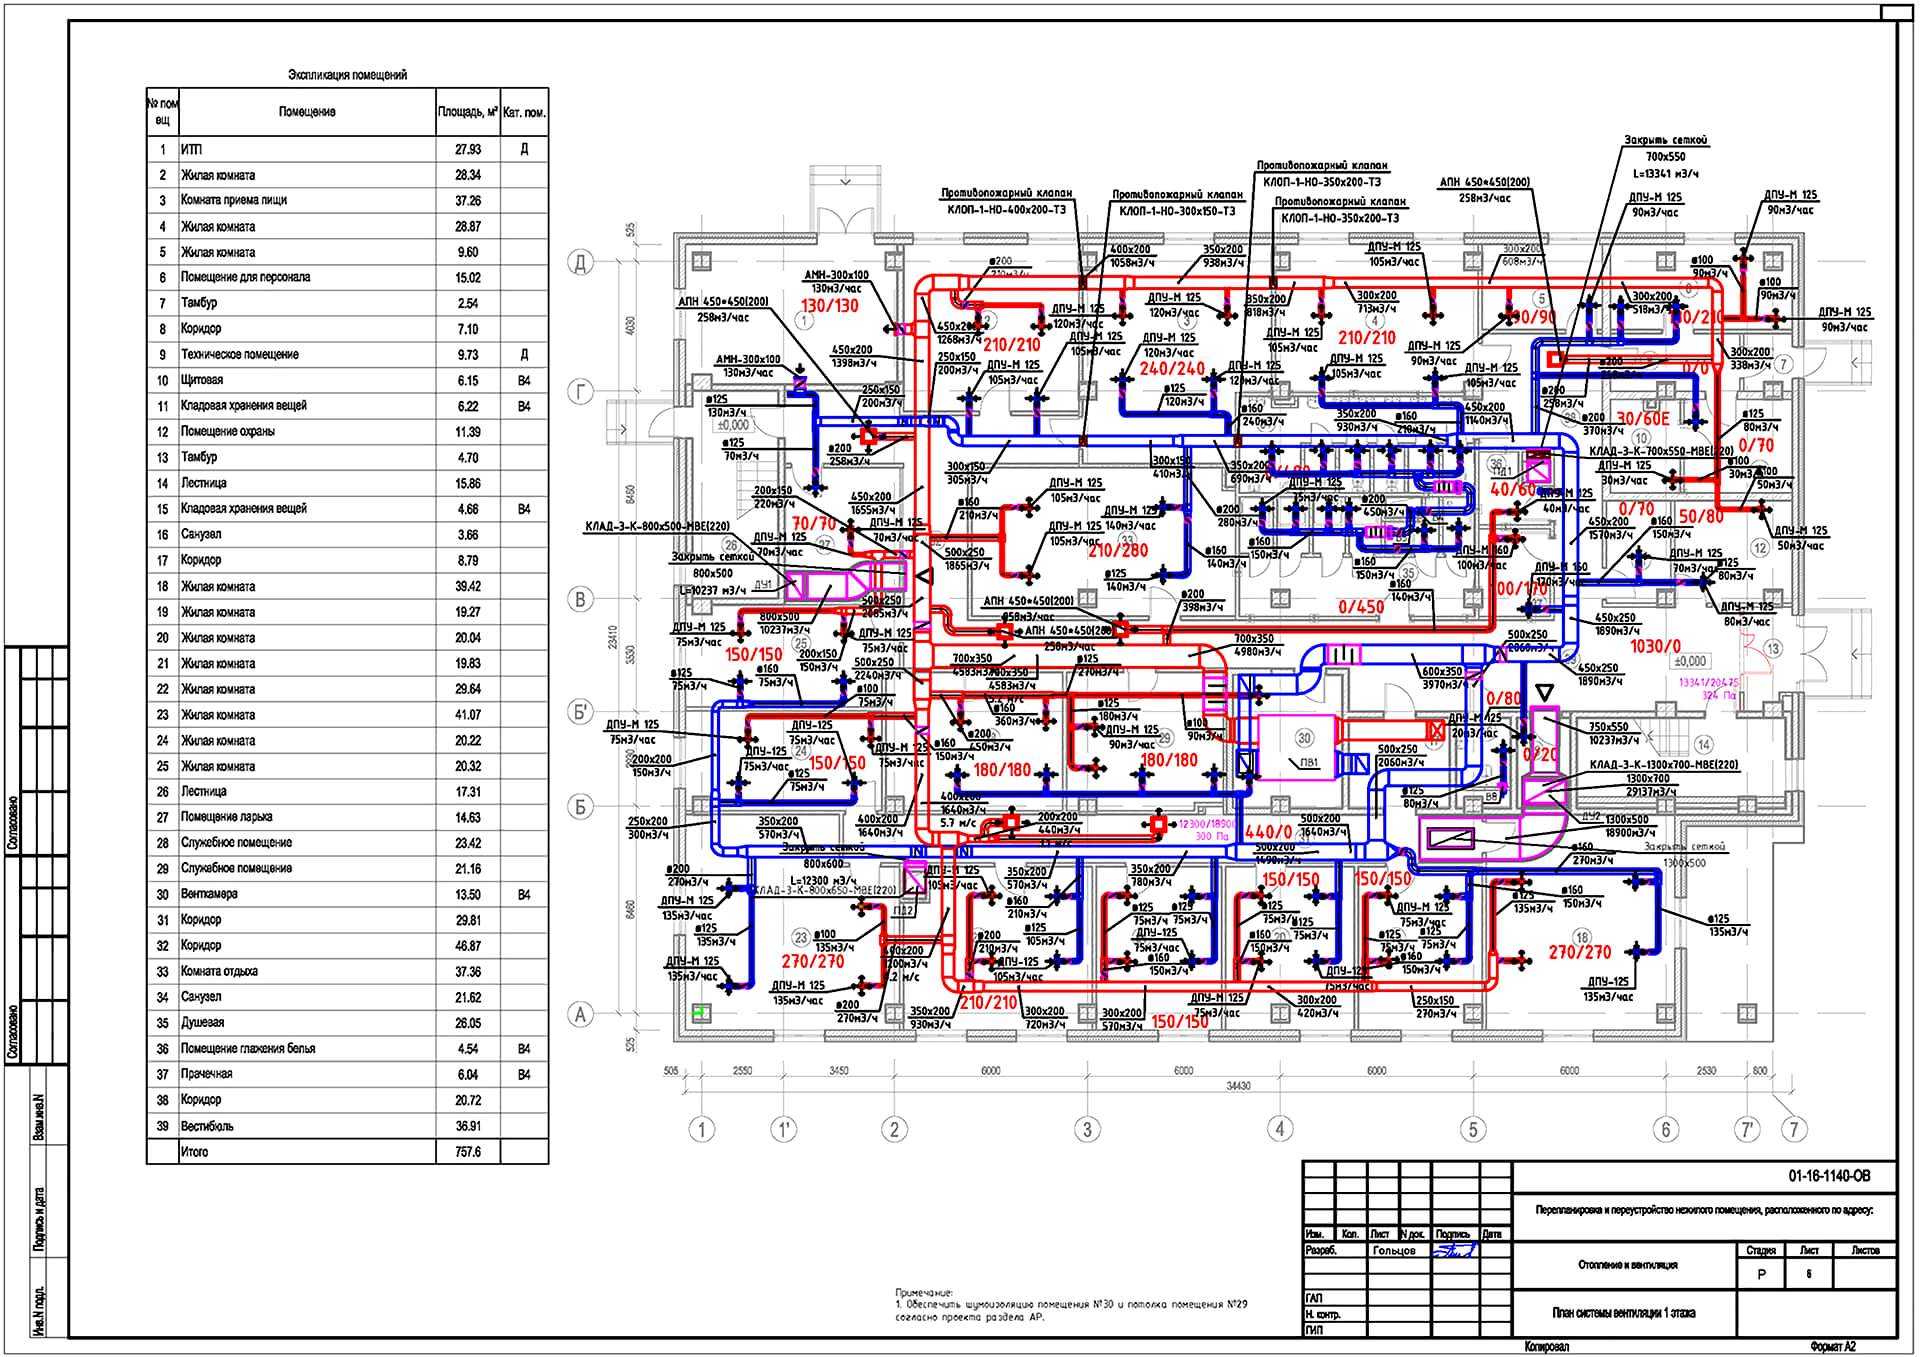 Проектирование систем вентиляции: составление план и расчет